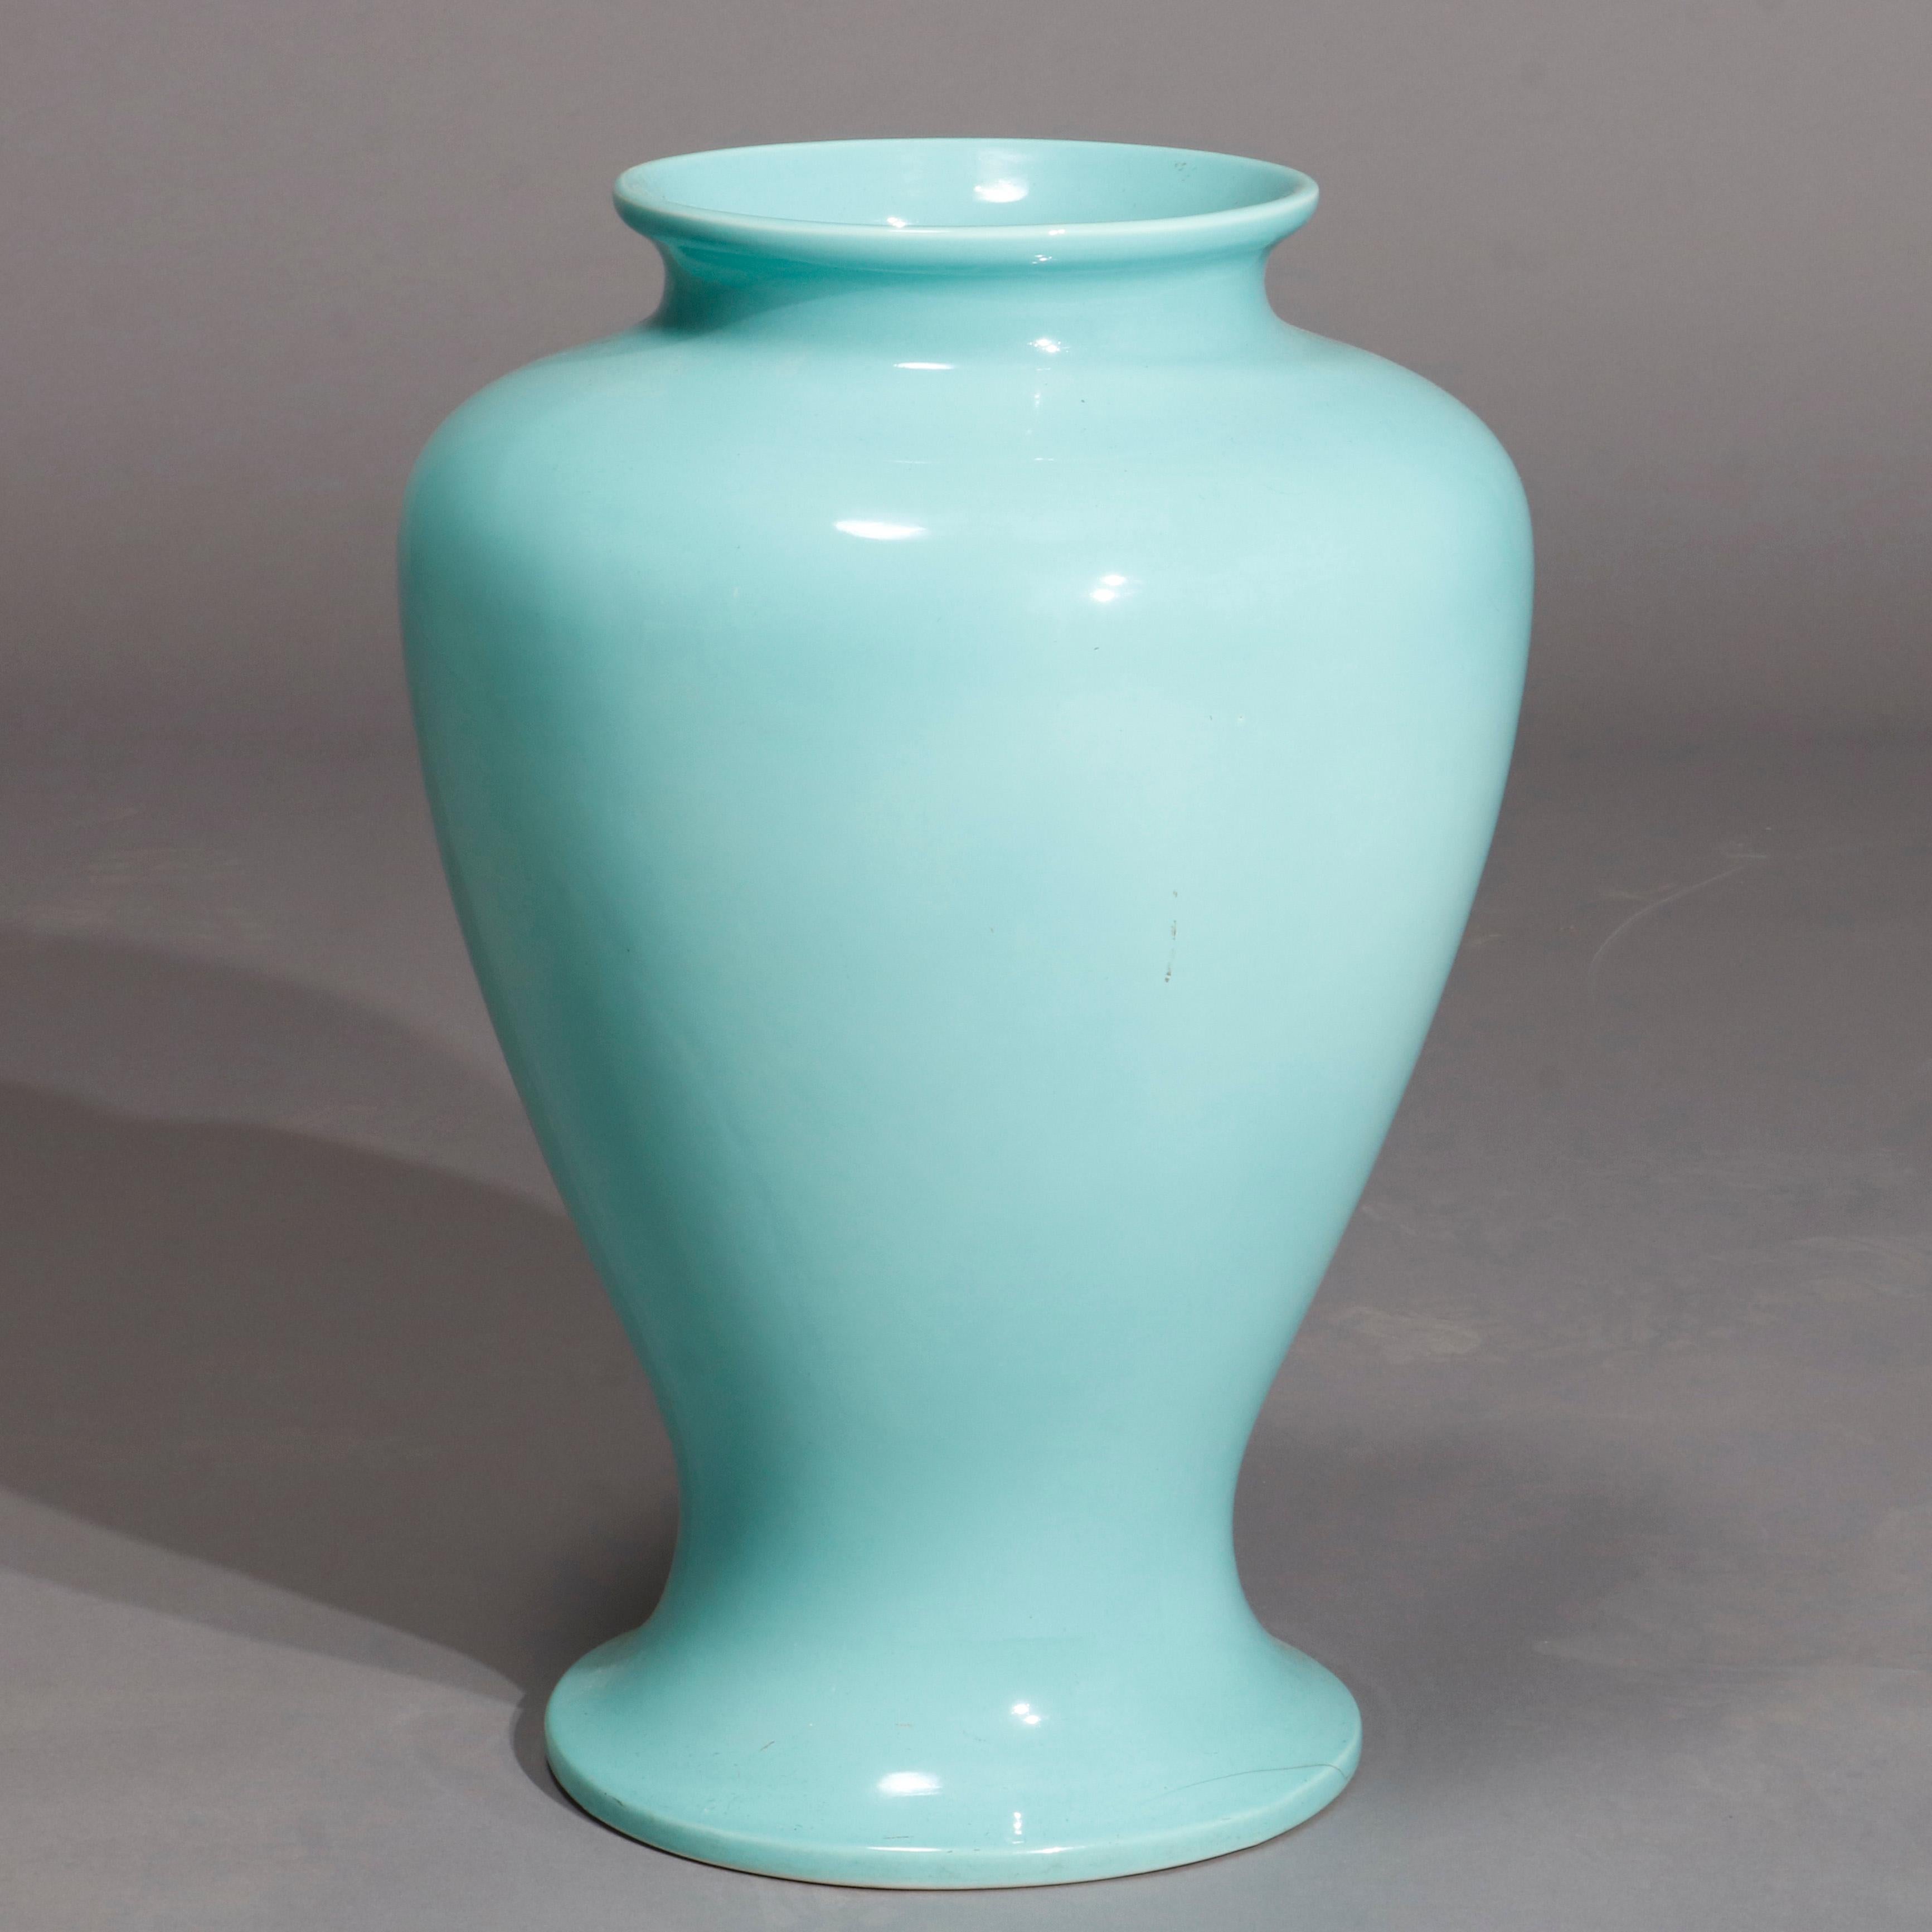 Un vase de sol antique Arts & Crafts en poterie d'art Trenton ware offre un récipient en forme d'urne émaillée bleue avec le cachet du fabricant sur la base comme photographié, 20ème siècle

Mesures- 23